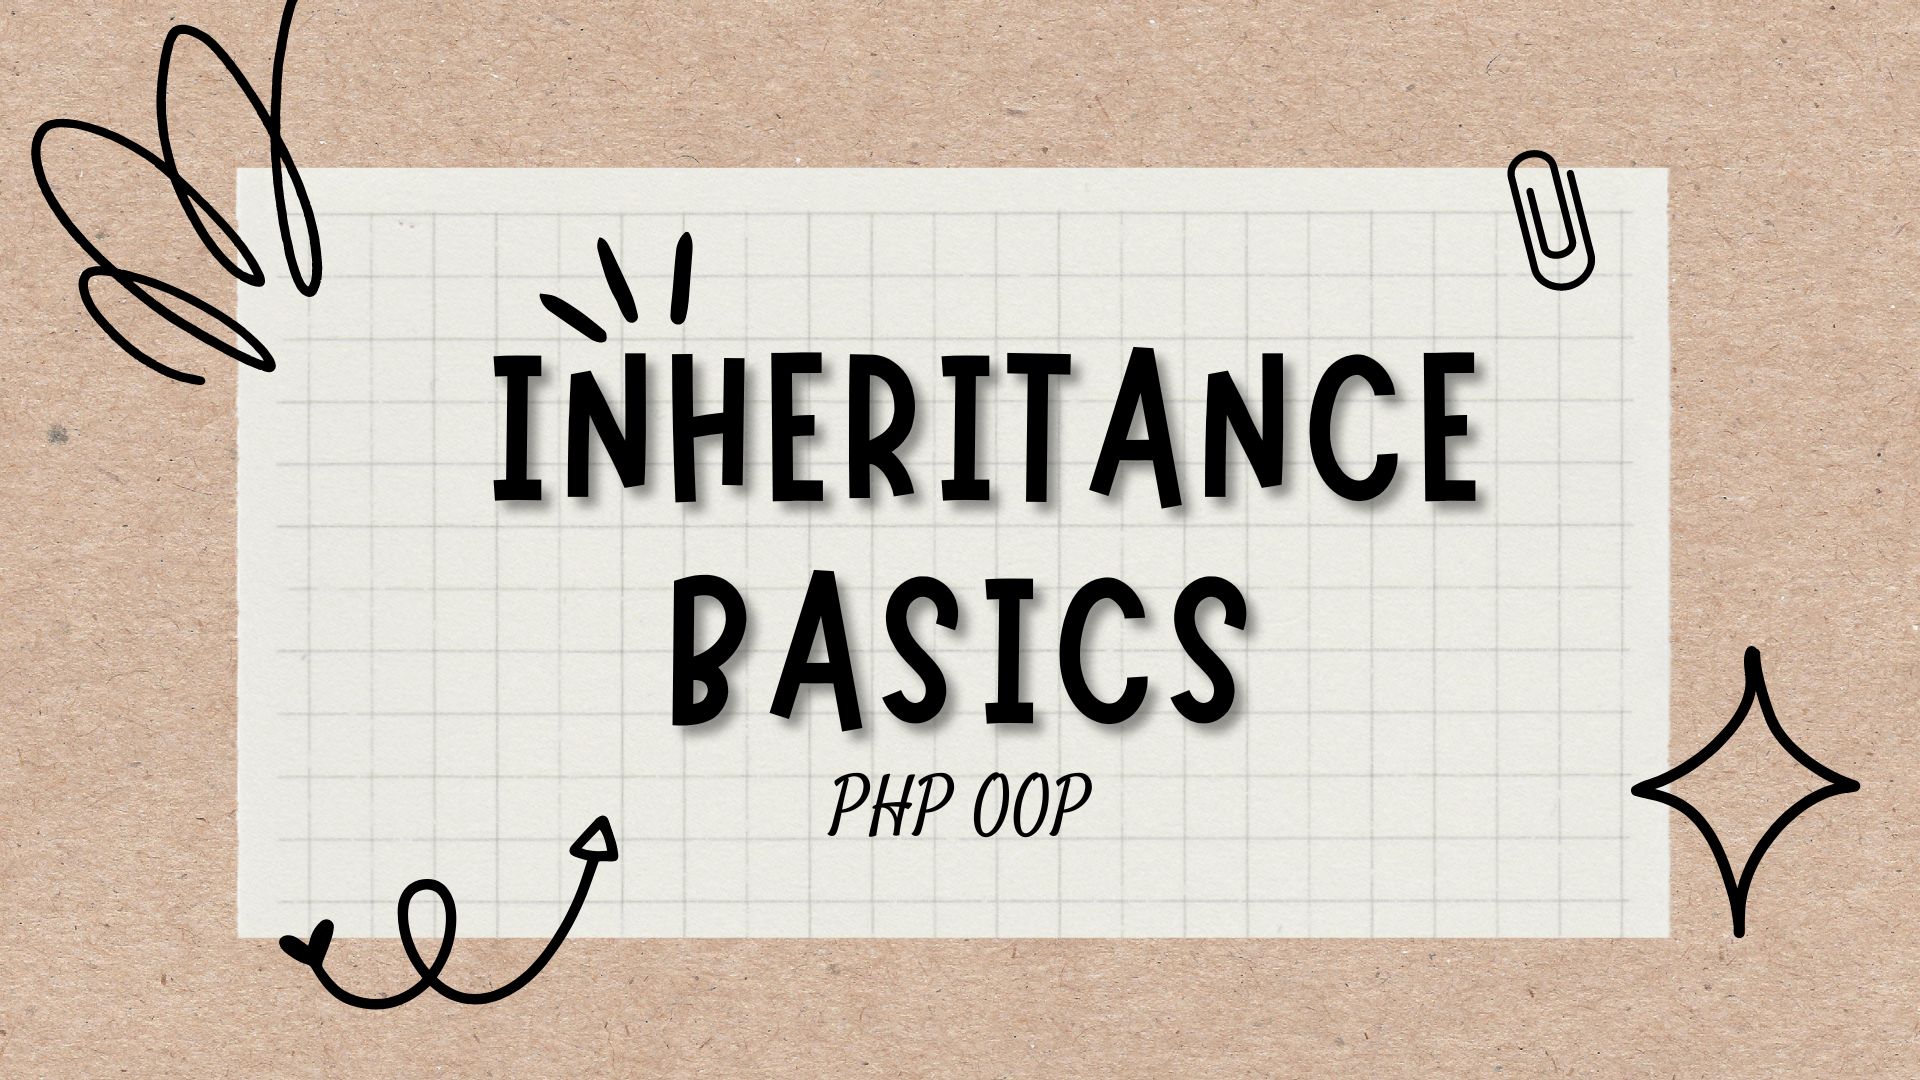 PHP OOP - Inheritance Basics